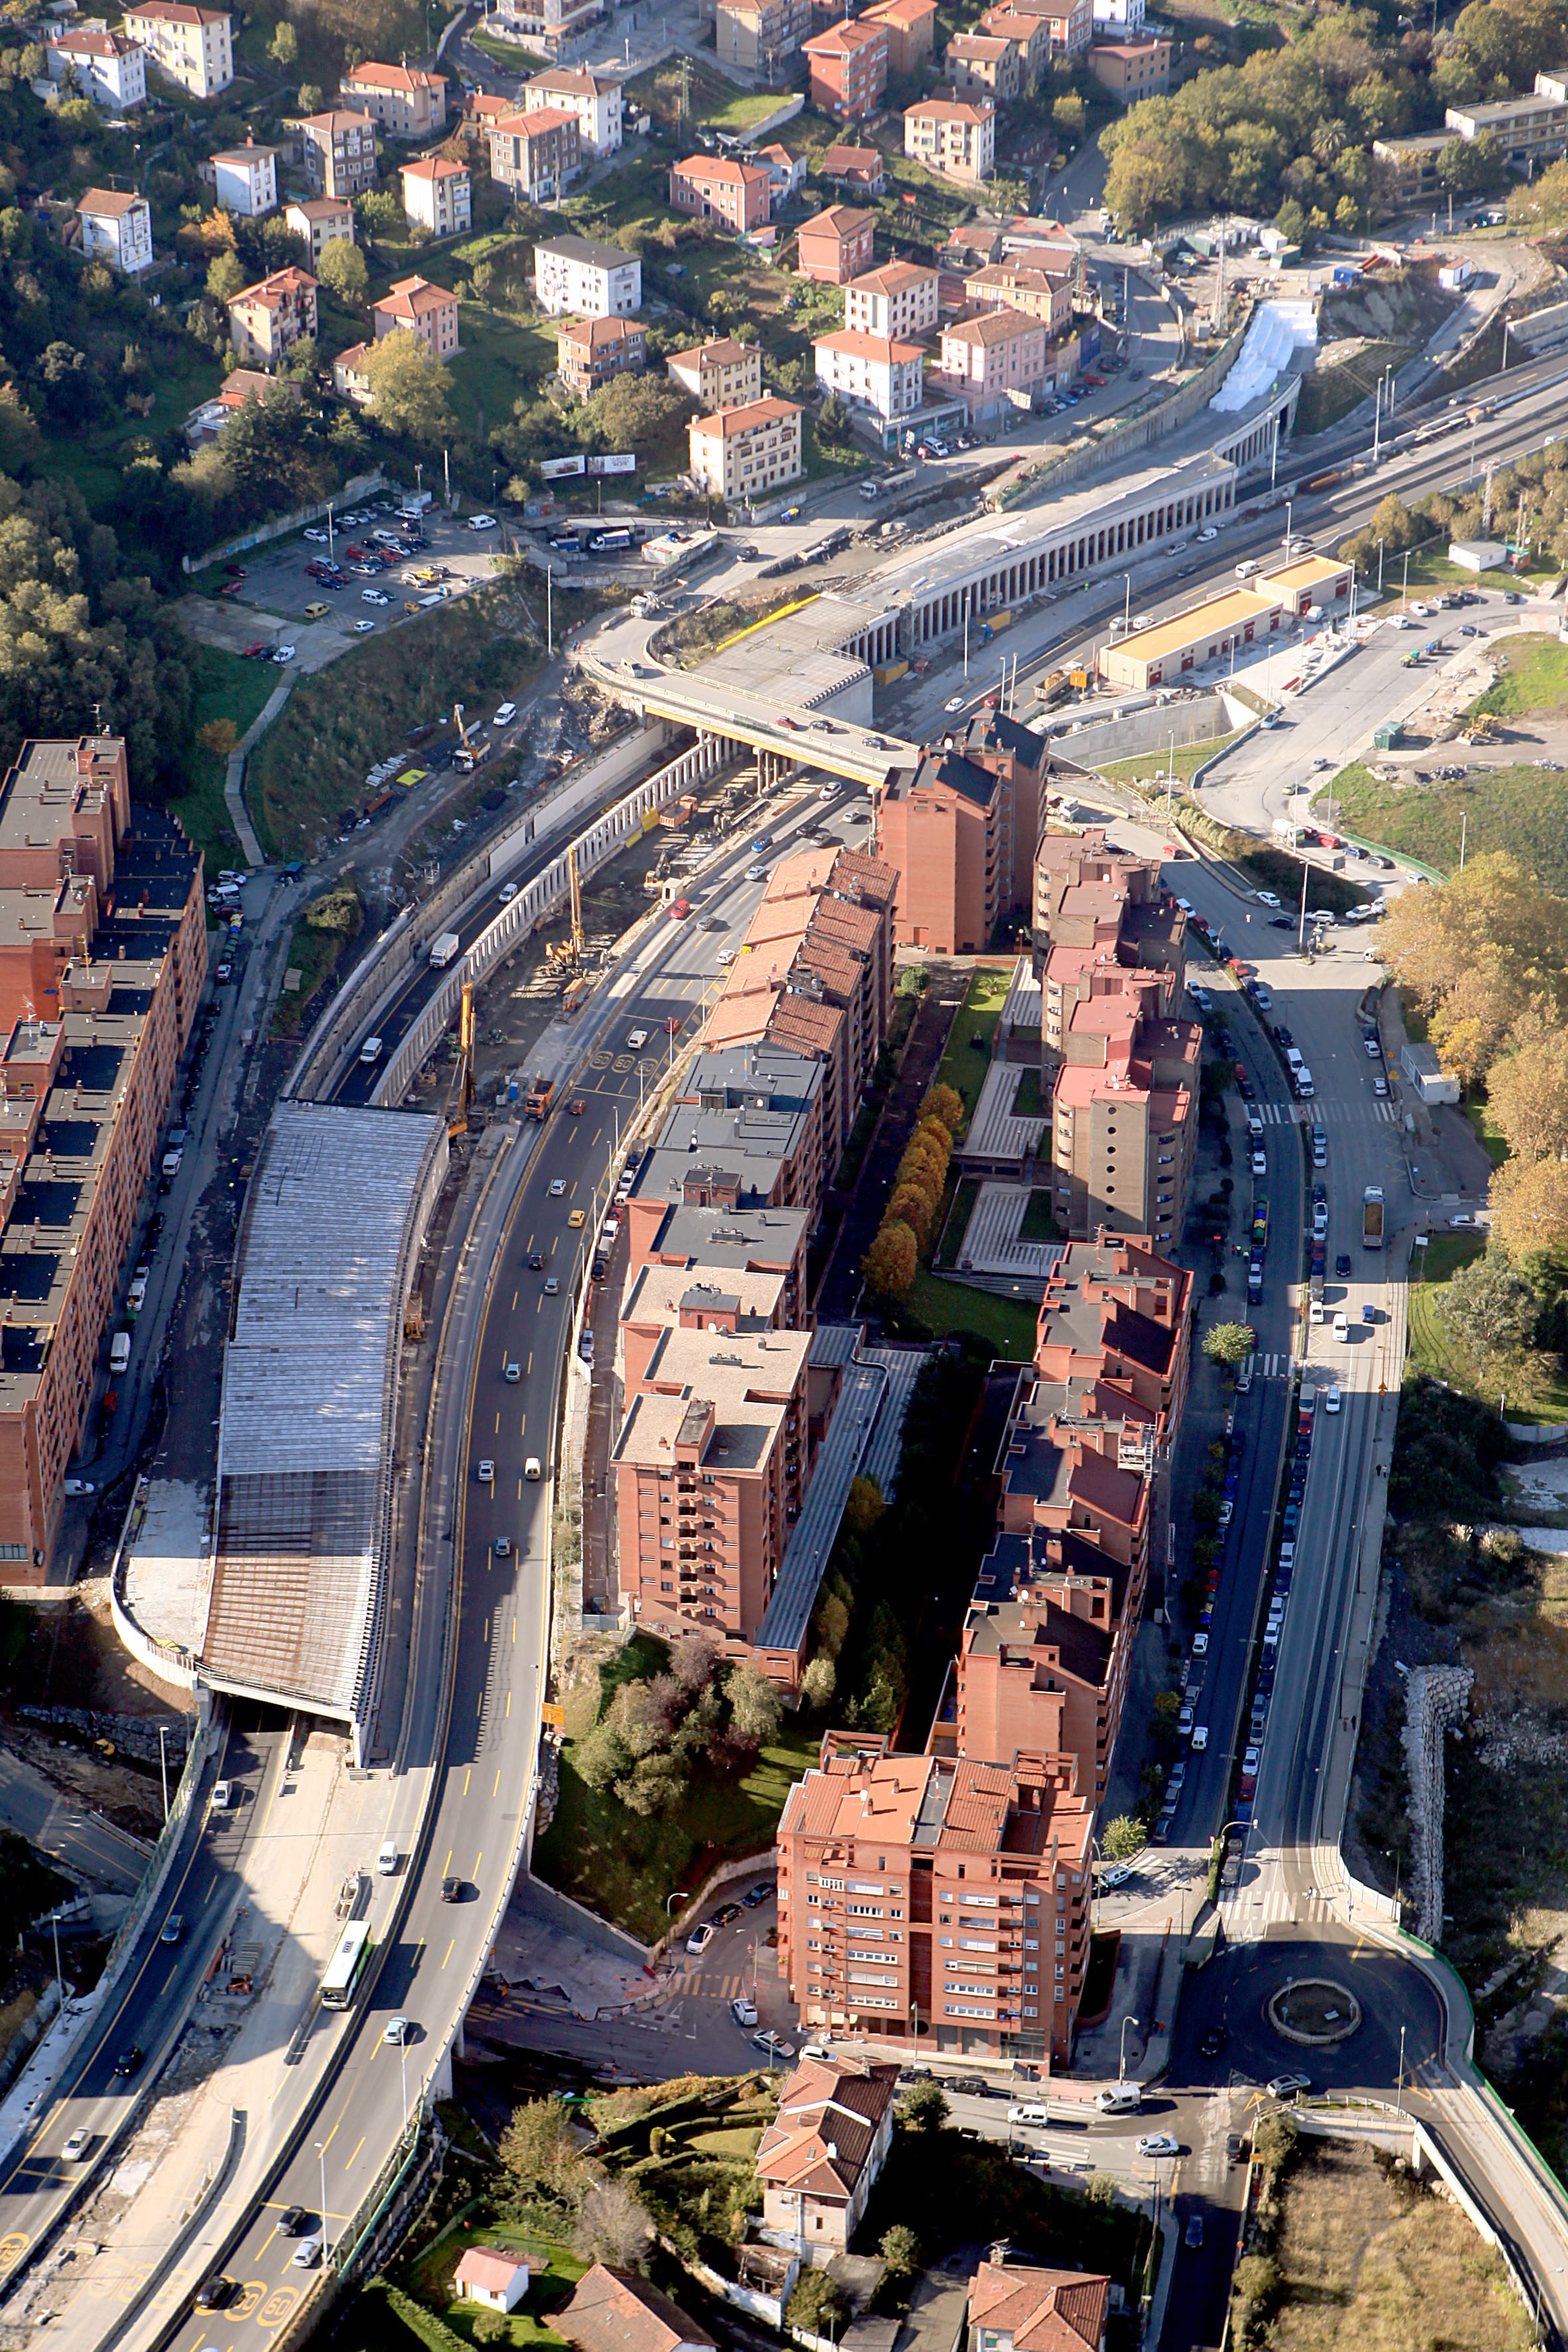 Image 7 of Access to Bilbao via San Mamés